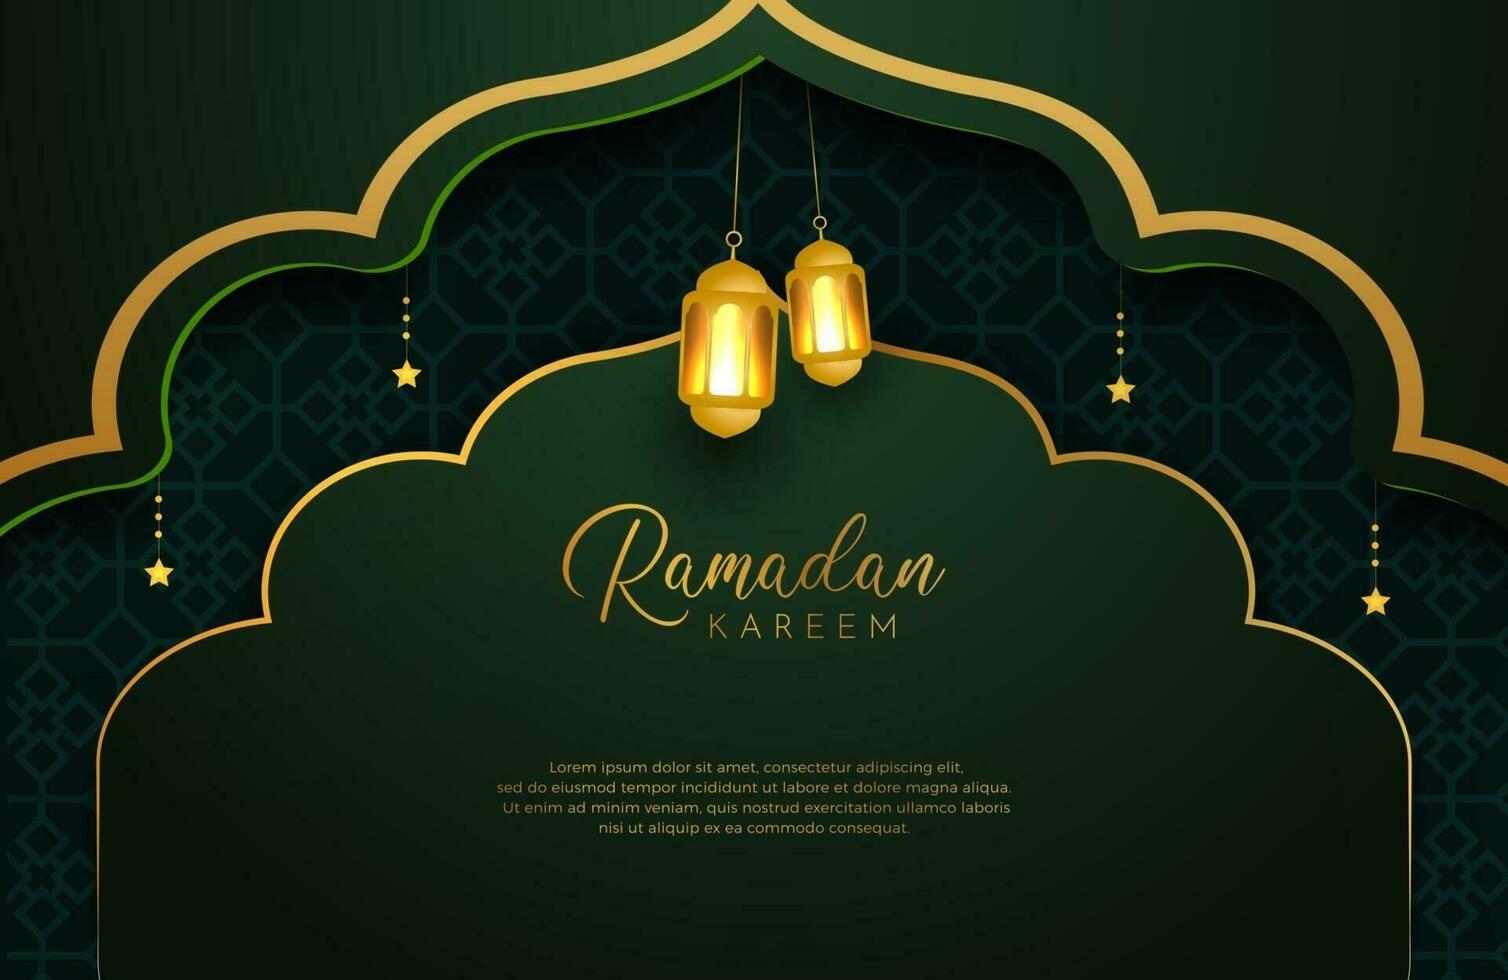 Ramadan Kareem fundo com ouro e verde ilustração vetorial de estilo de luxo para as celebrações do mês sagrado islâmico decorado com estrelas e lanterna vetor